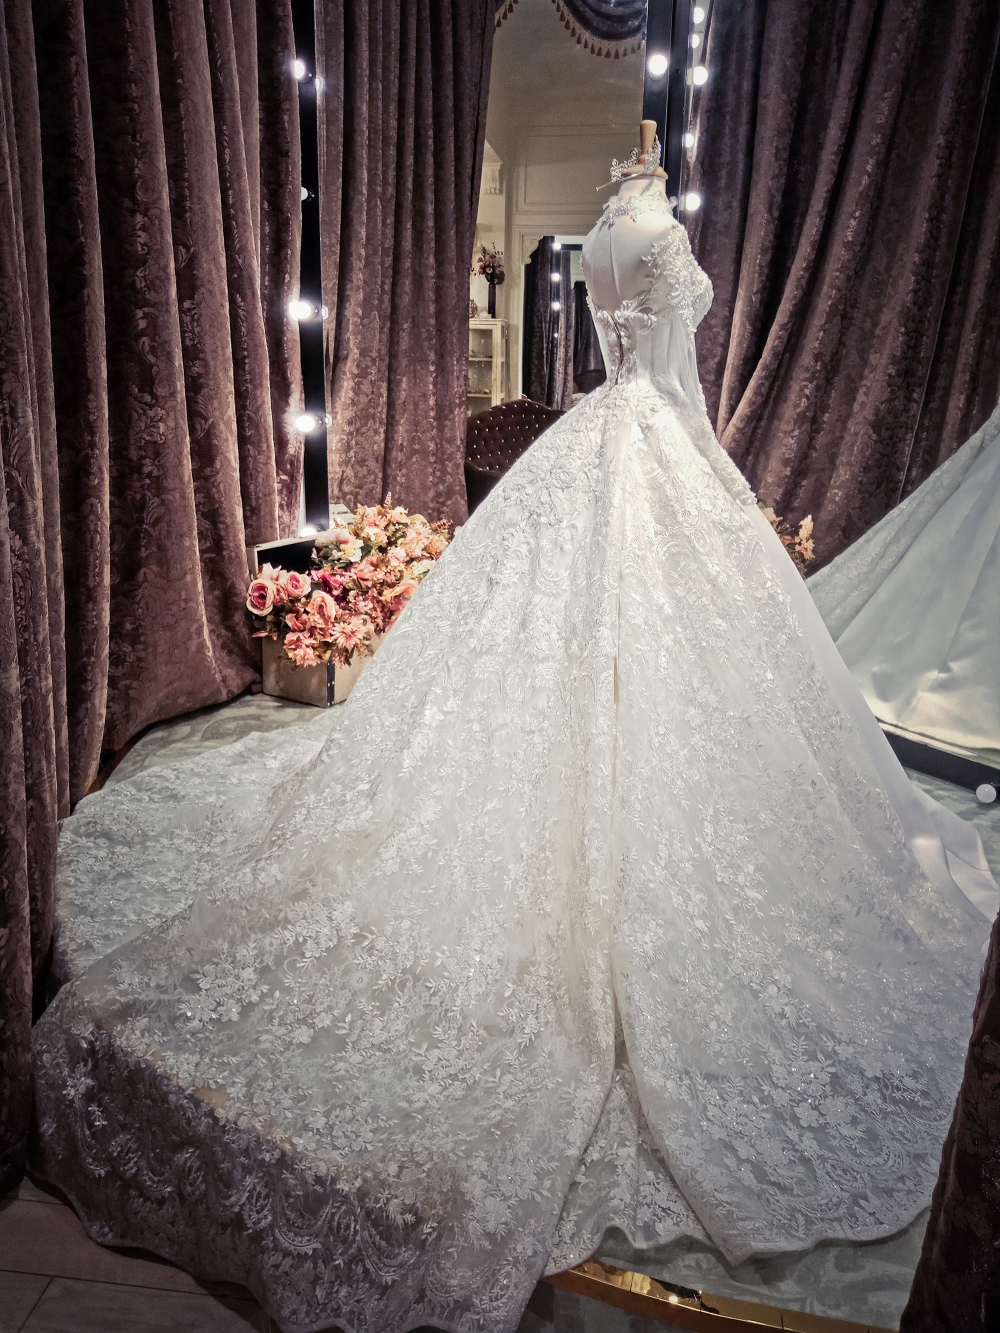 MARIE BRIDAL | Váy cưới phong cách hoàng gia cho nàng yêu thích sự cổ điển  và sang trọng 💕 Ghé Marie thử ngay nàng nhé | Instagram